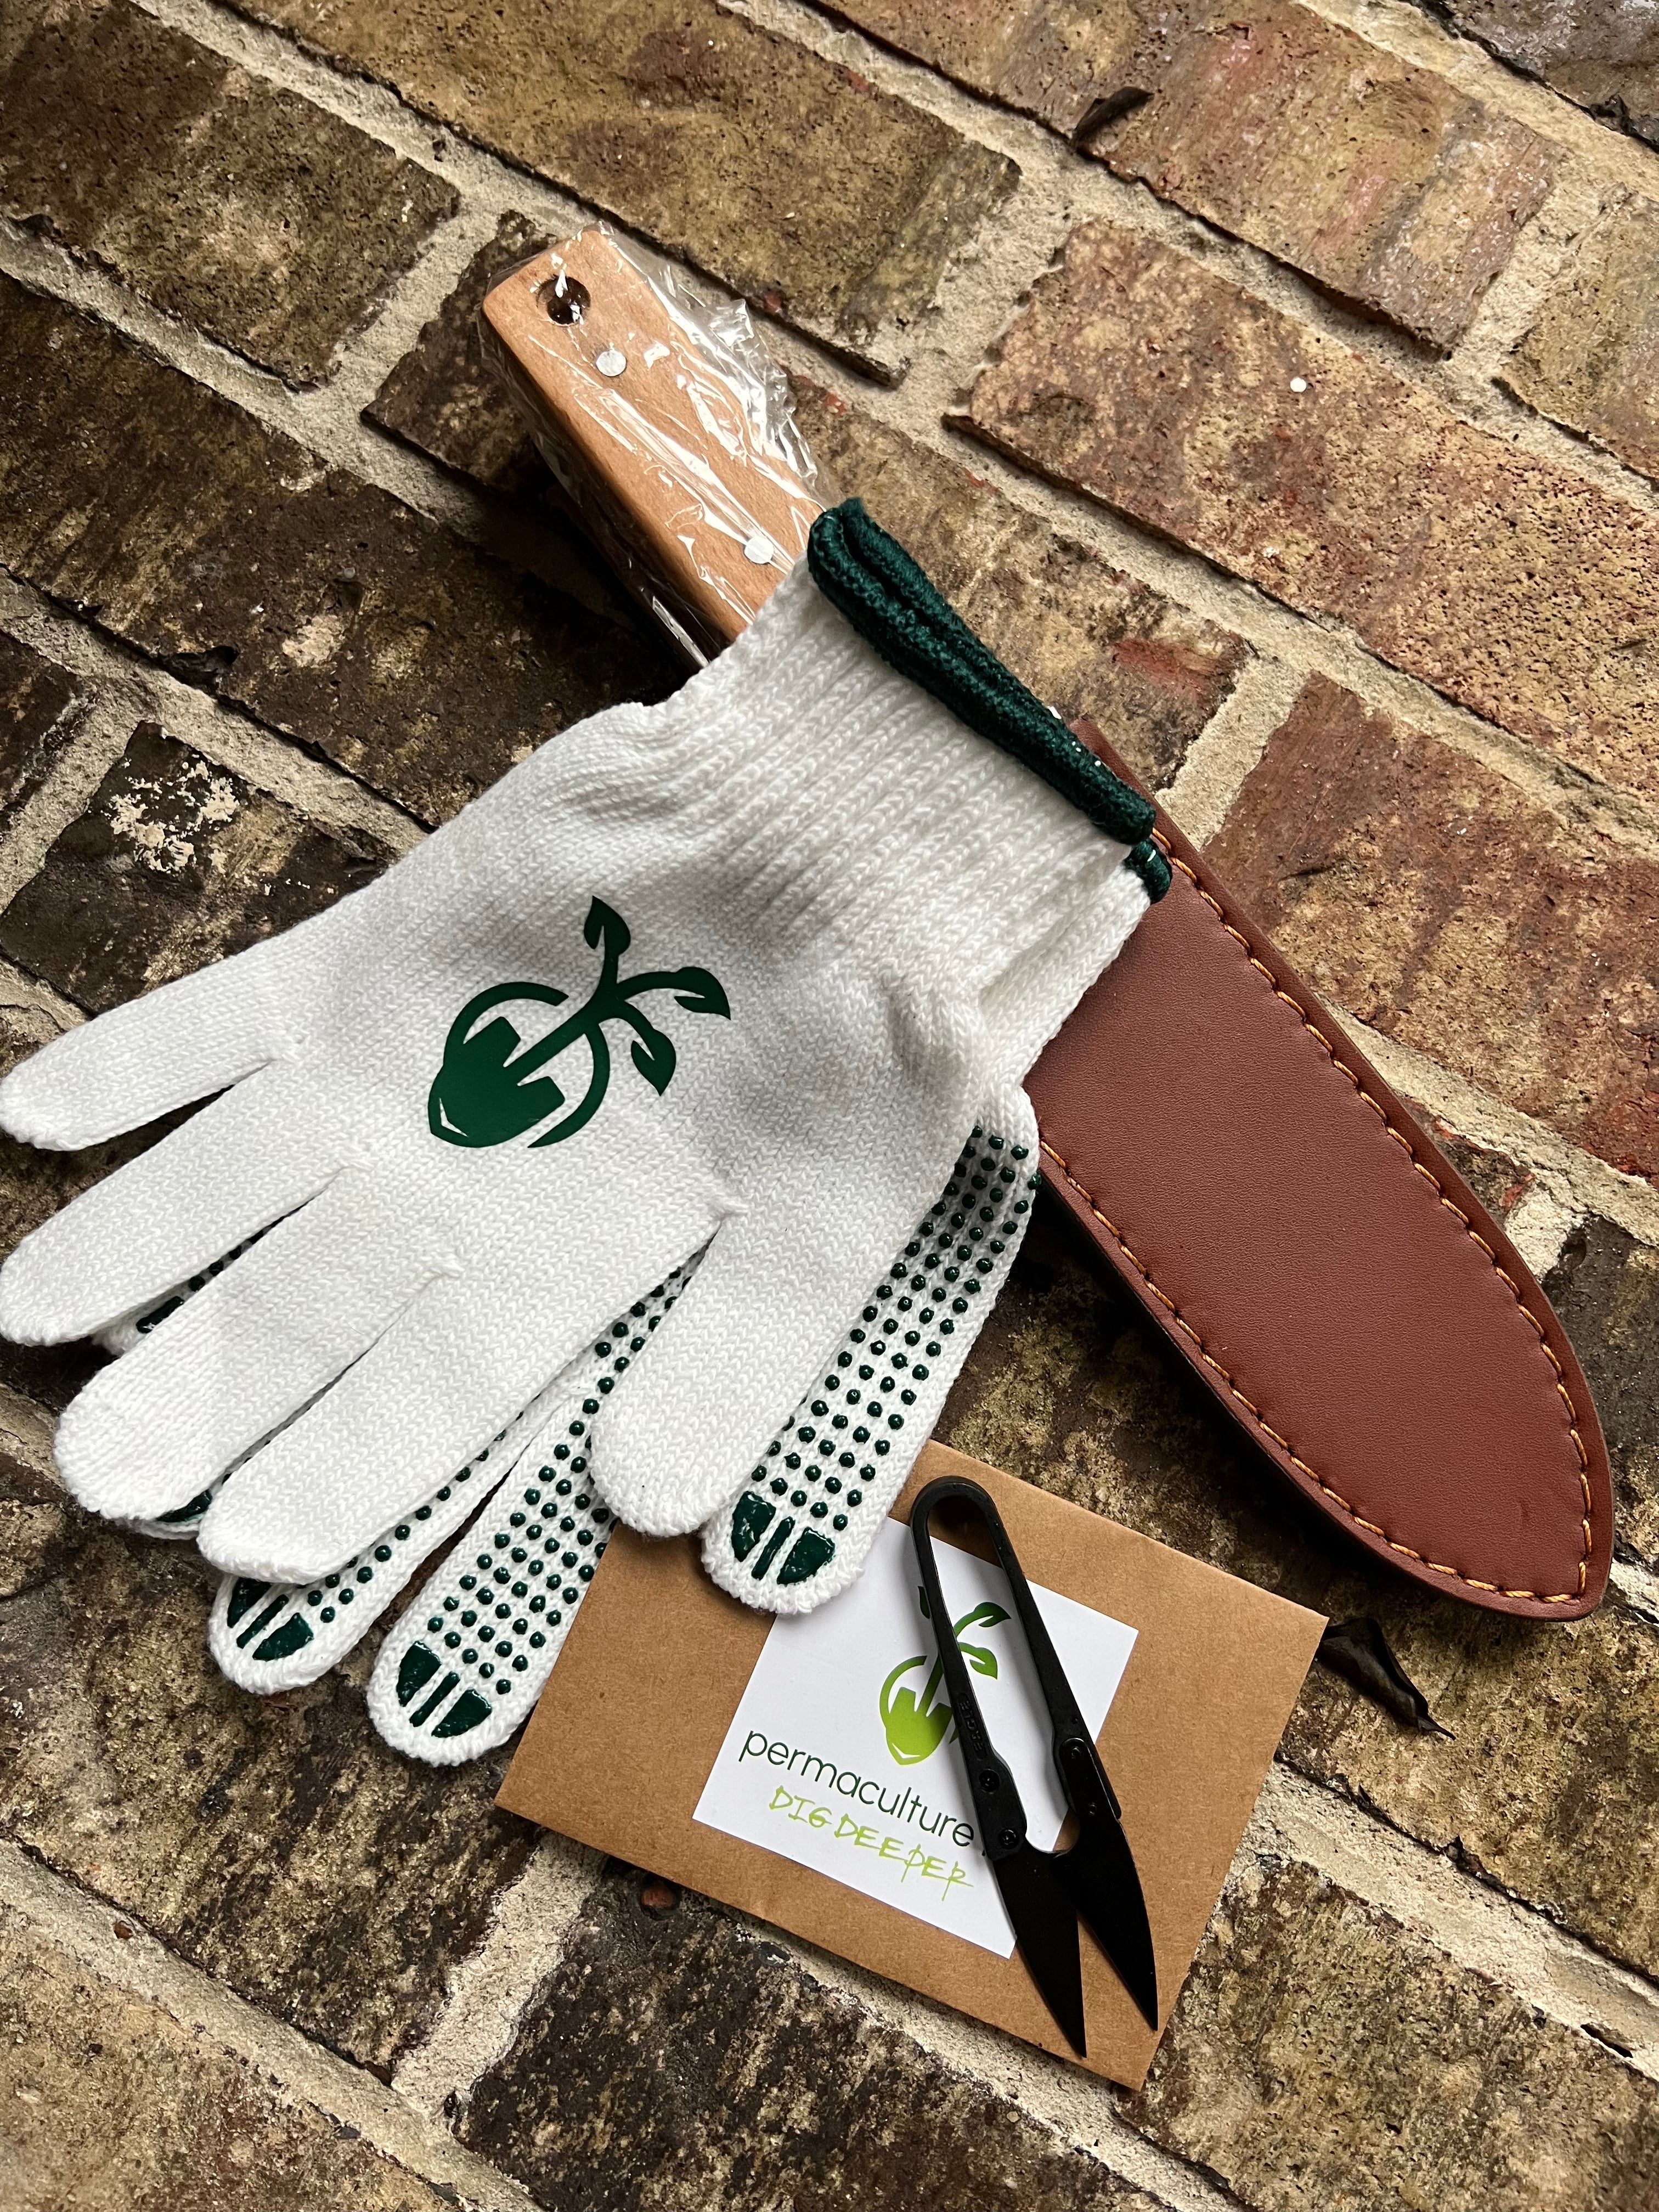 Starter Garden Kit Bundle: Hori Hori Garden Tool, Mini Snips and Garden Gloves